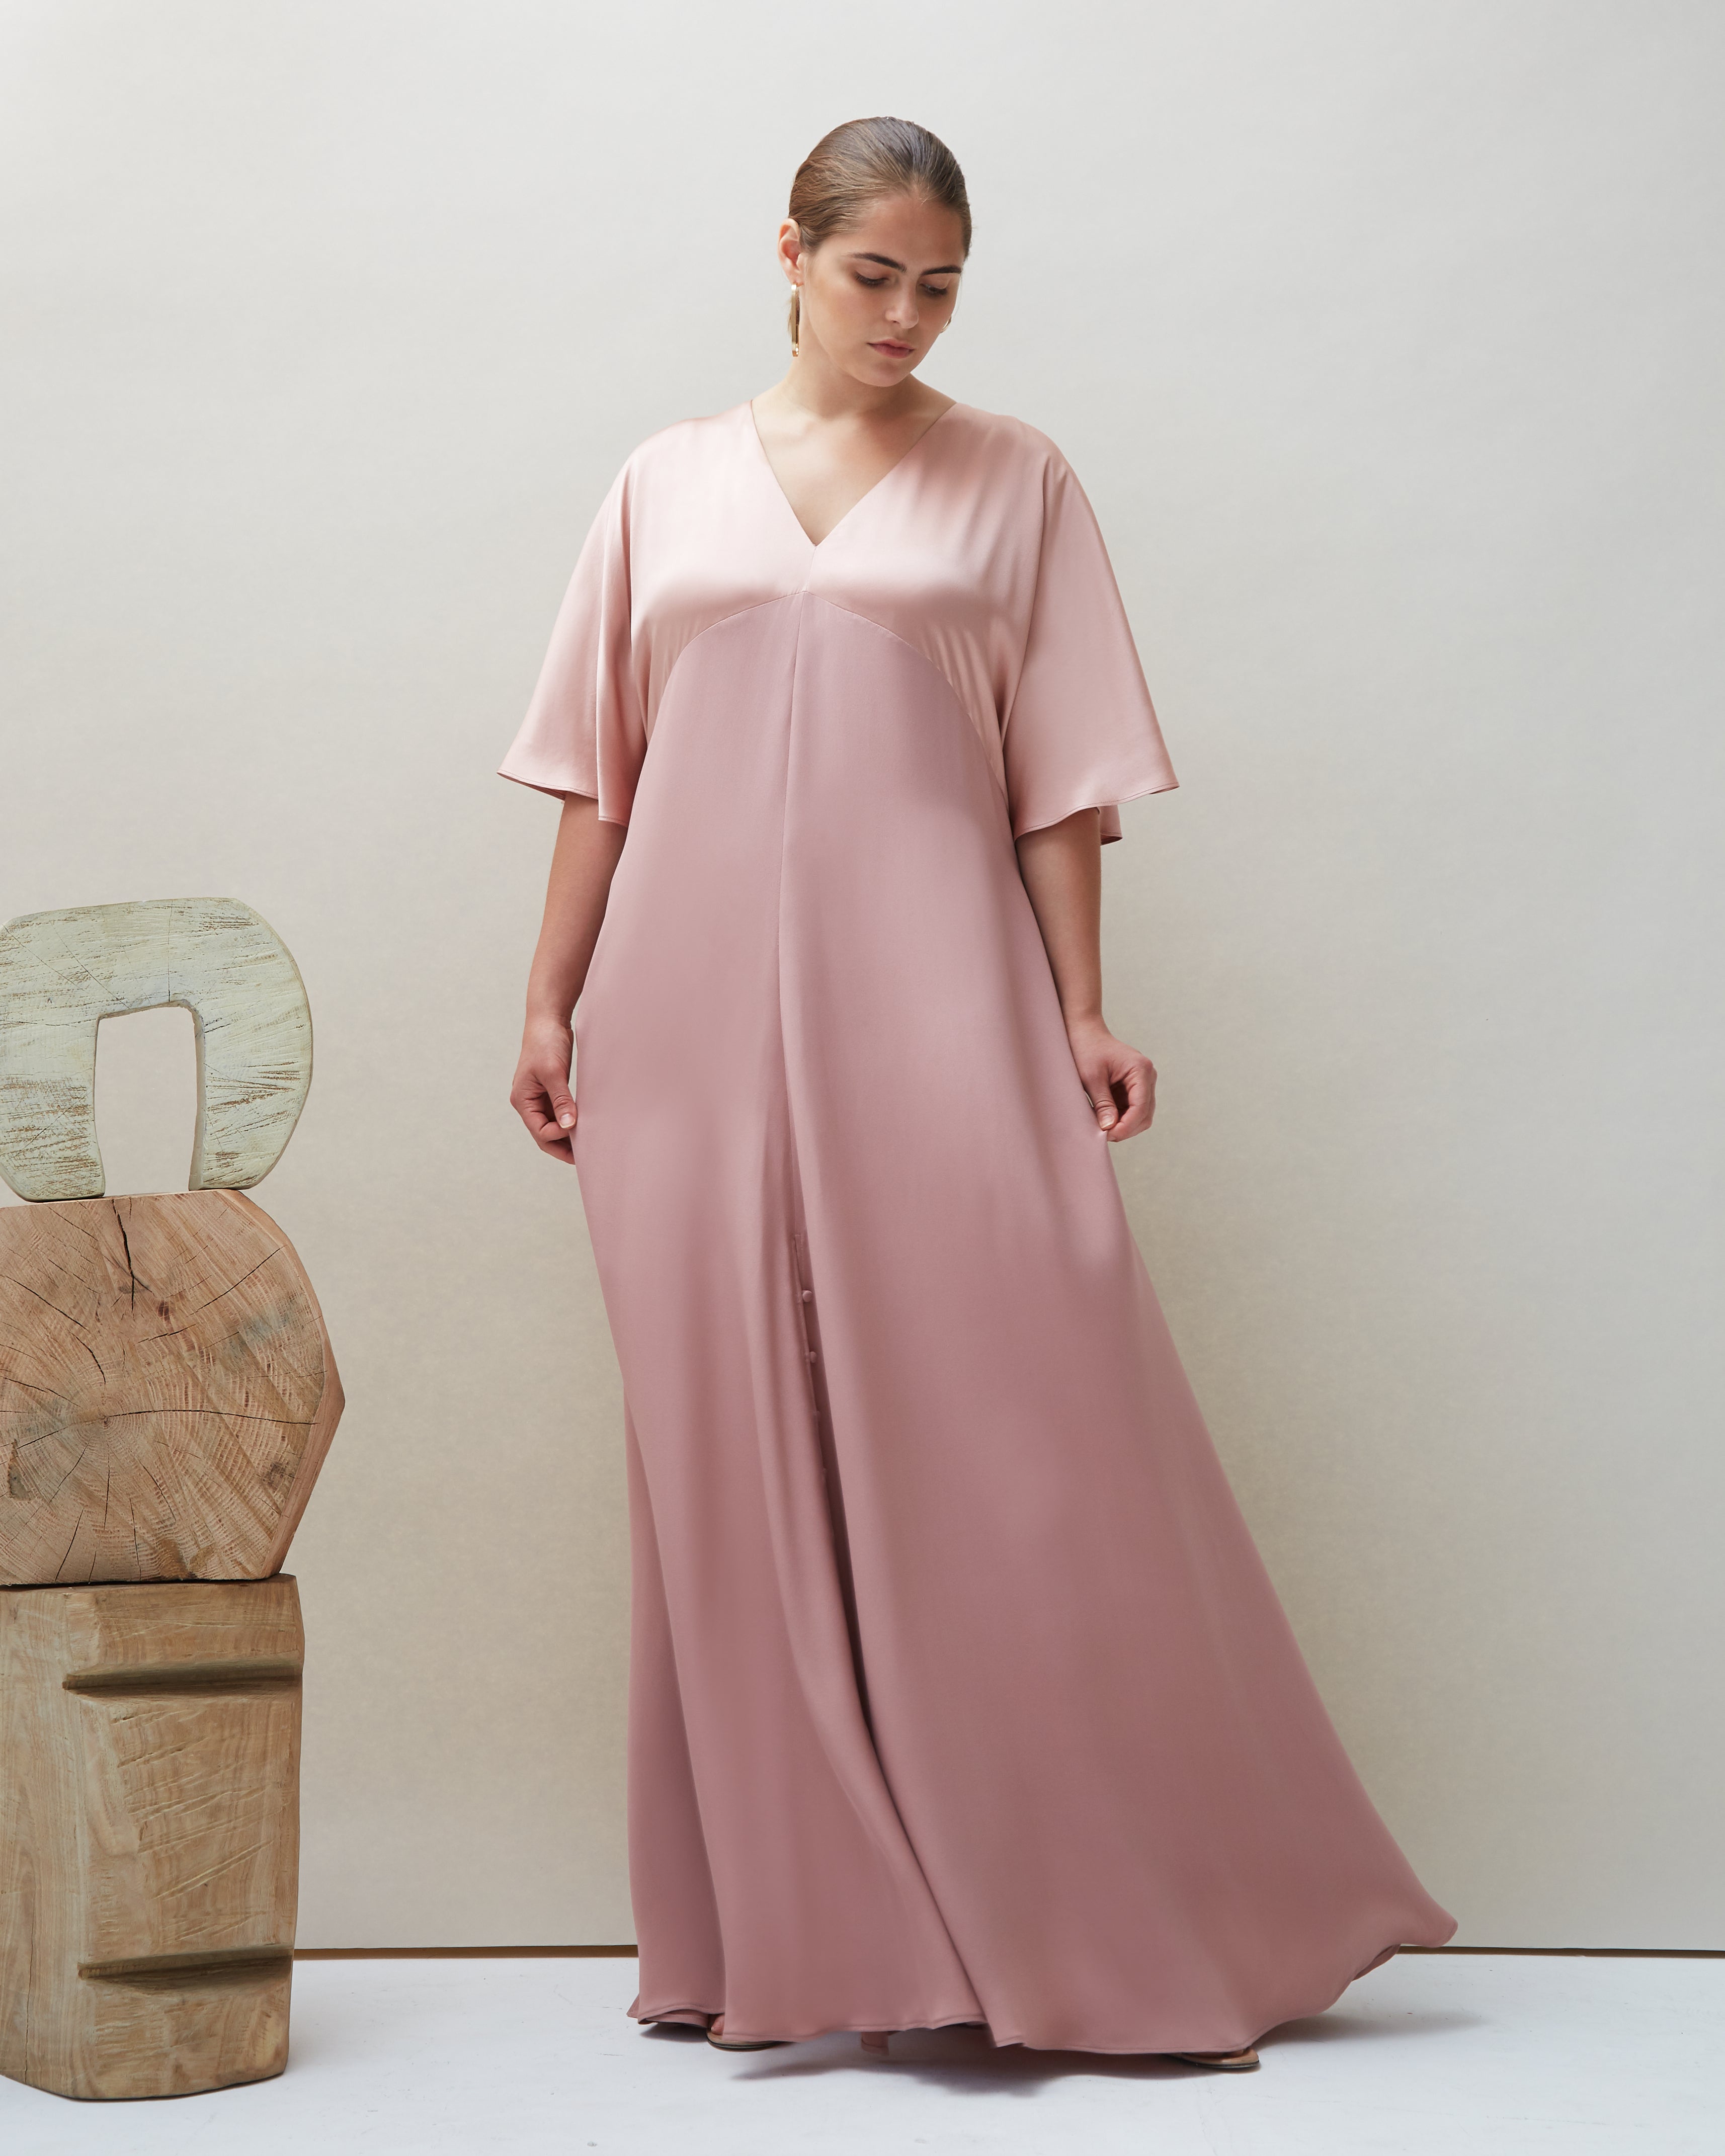 Seta Gown in Blush - COYAN - Plus size